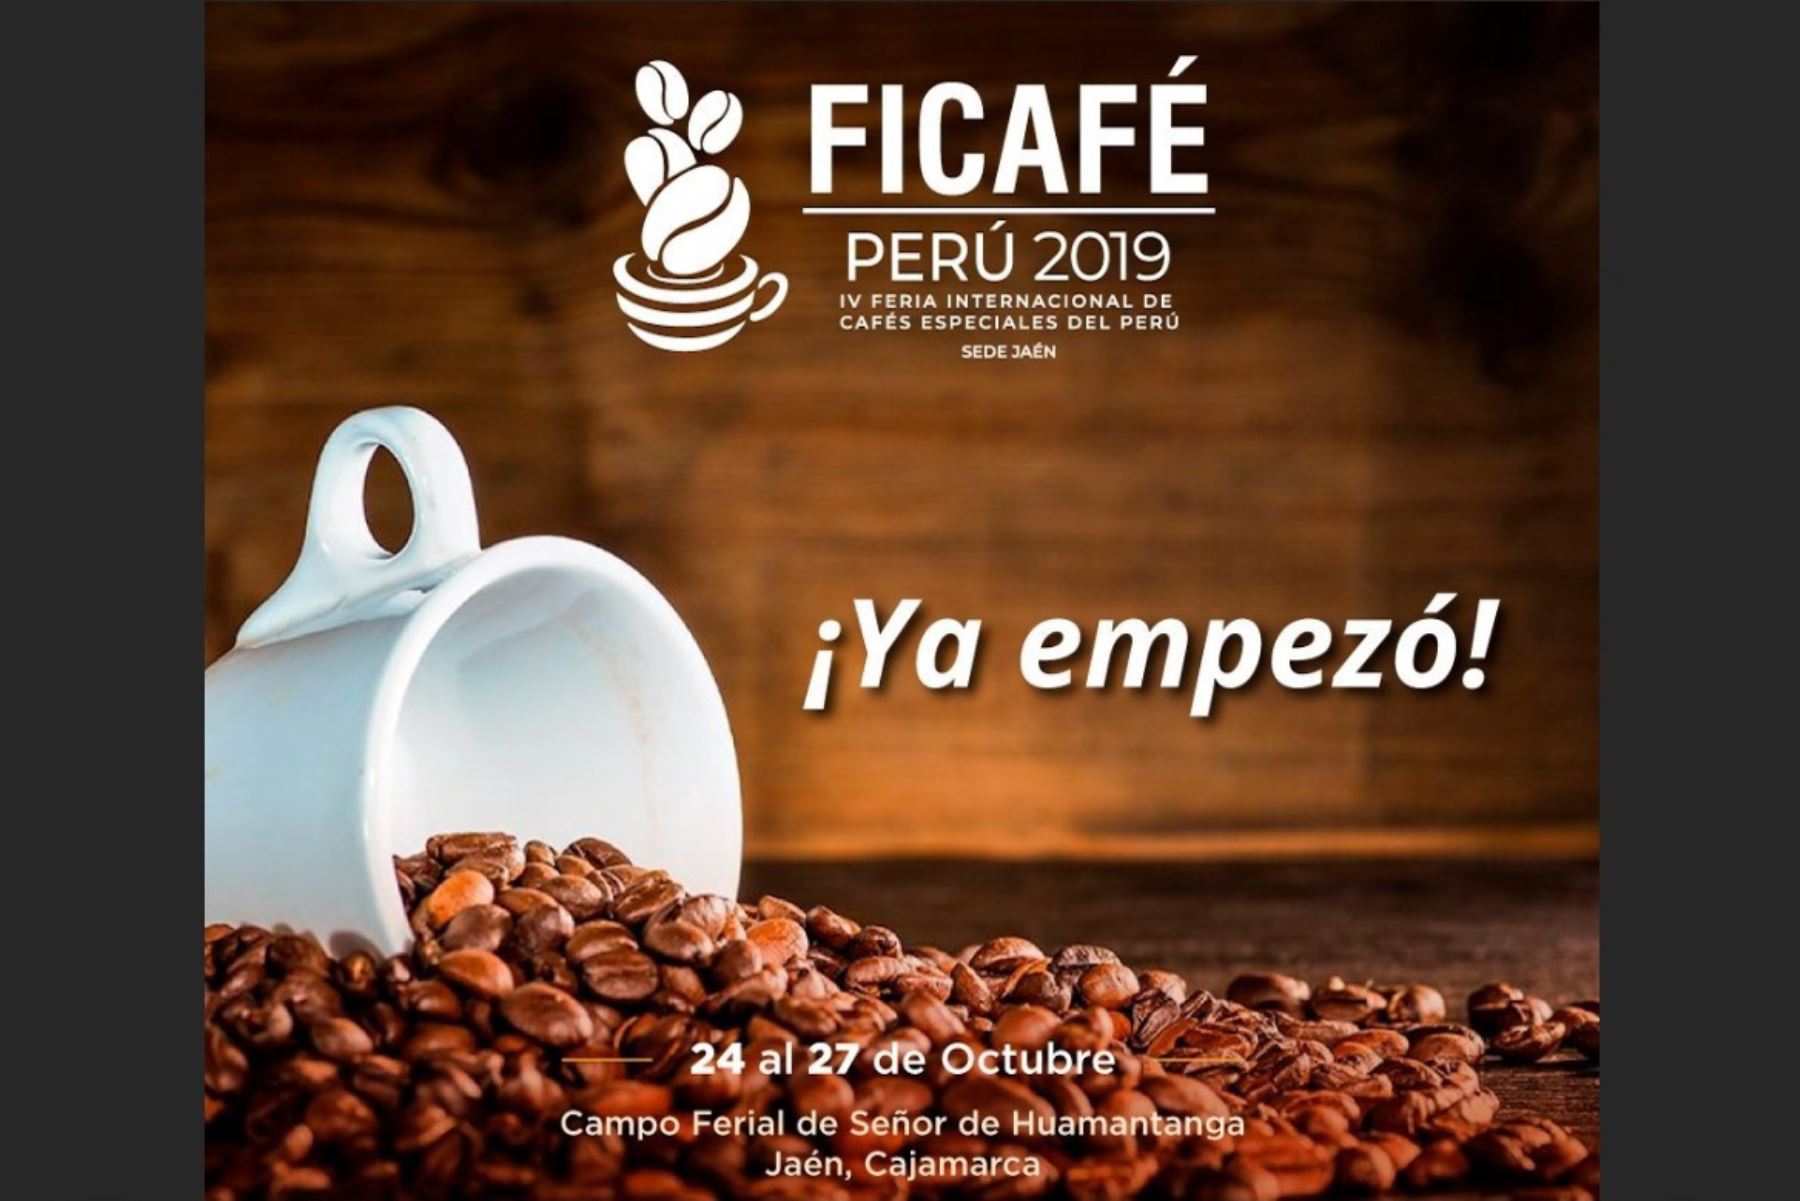 Feria Internacional de Cafés Especiales (Ficafé) 2019 espera generar negocios por más de S/ 19 millones en certamen que se desarrolla en Jaén, Cajamarca.